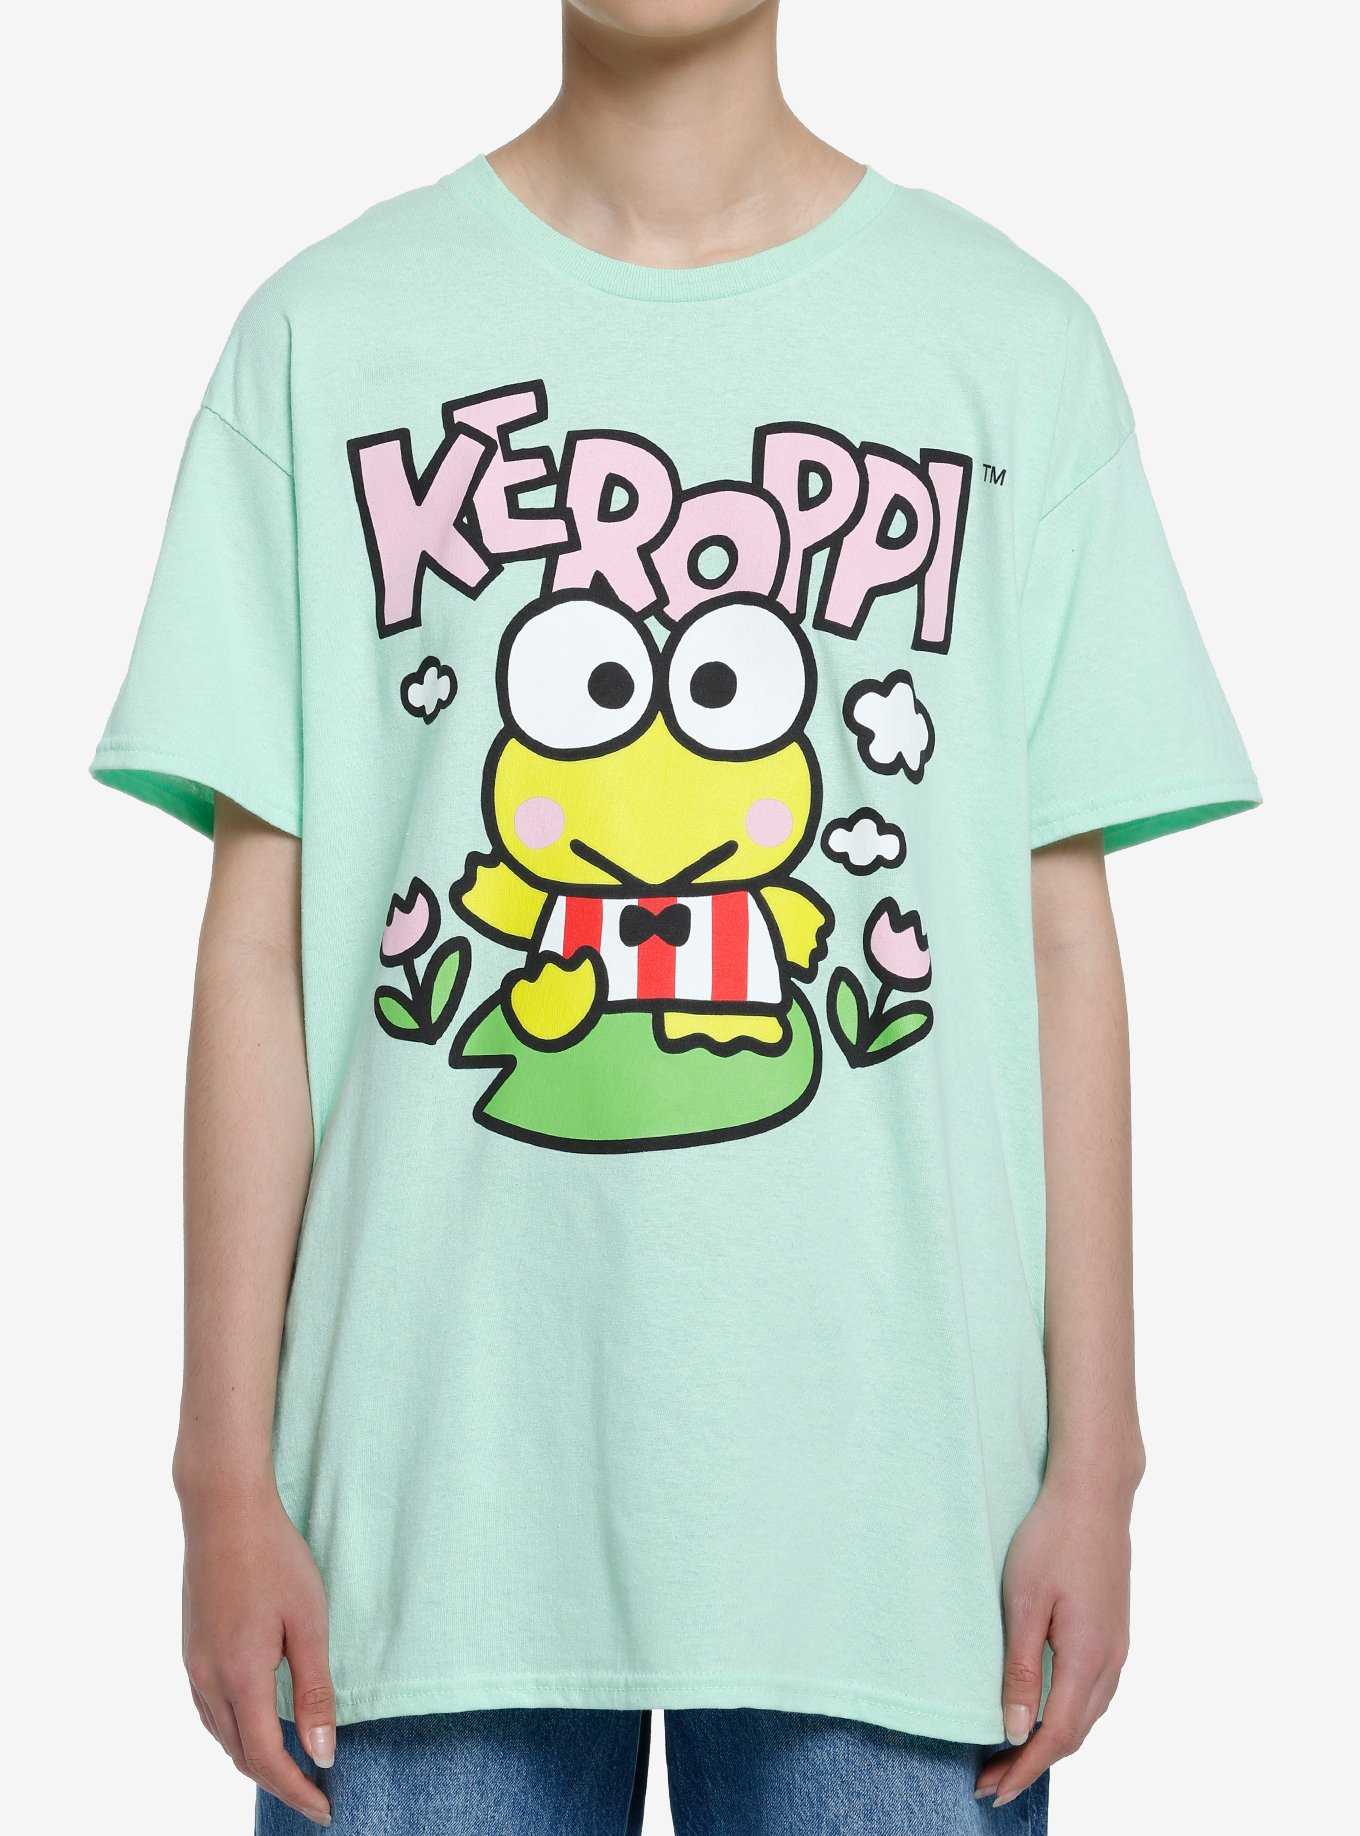 Keroppi Double-Sided Girls T-Shirt, , hi-res